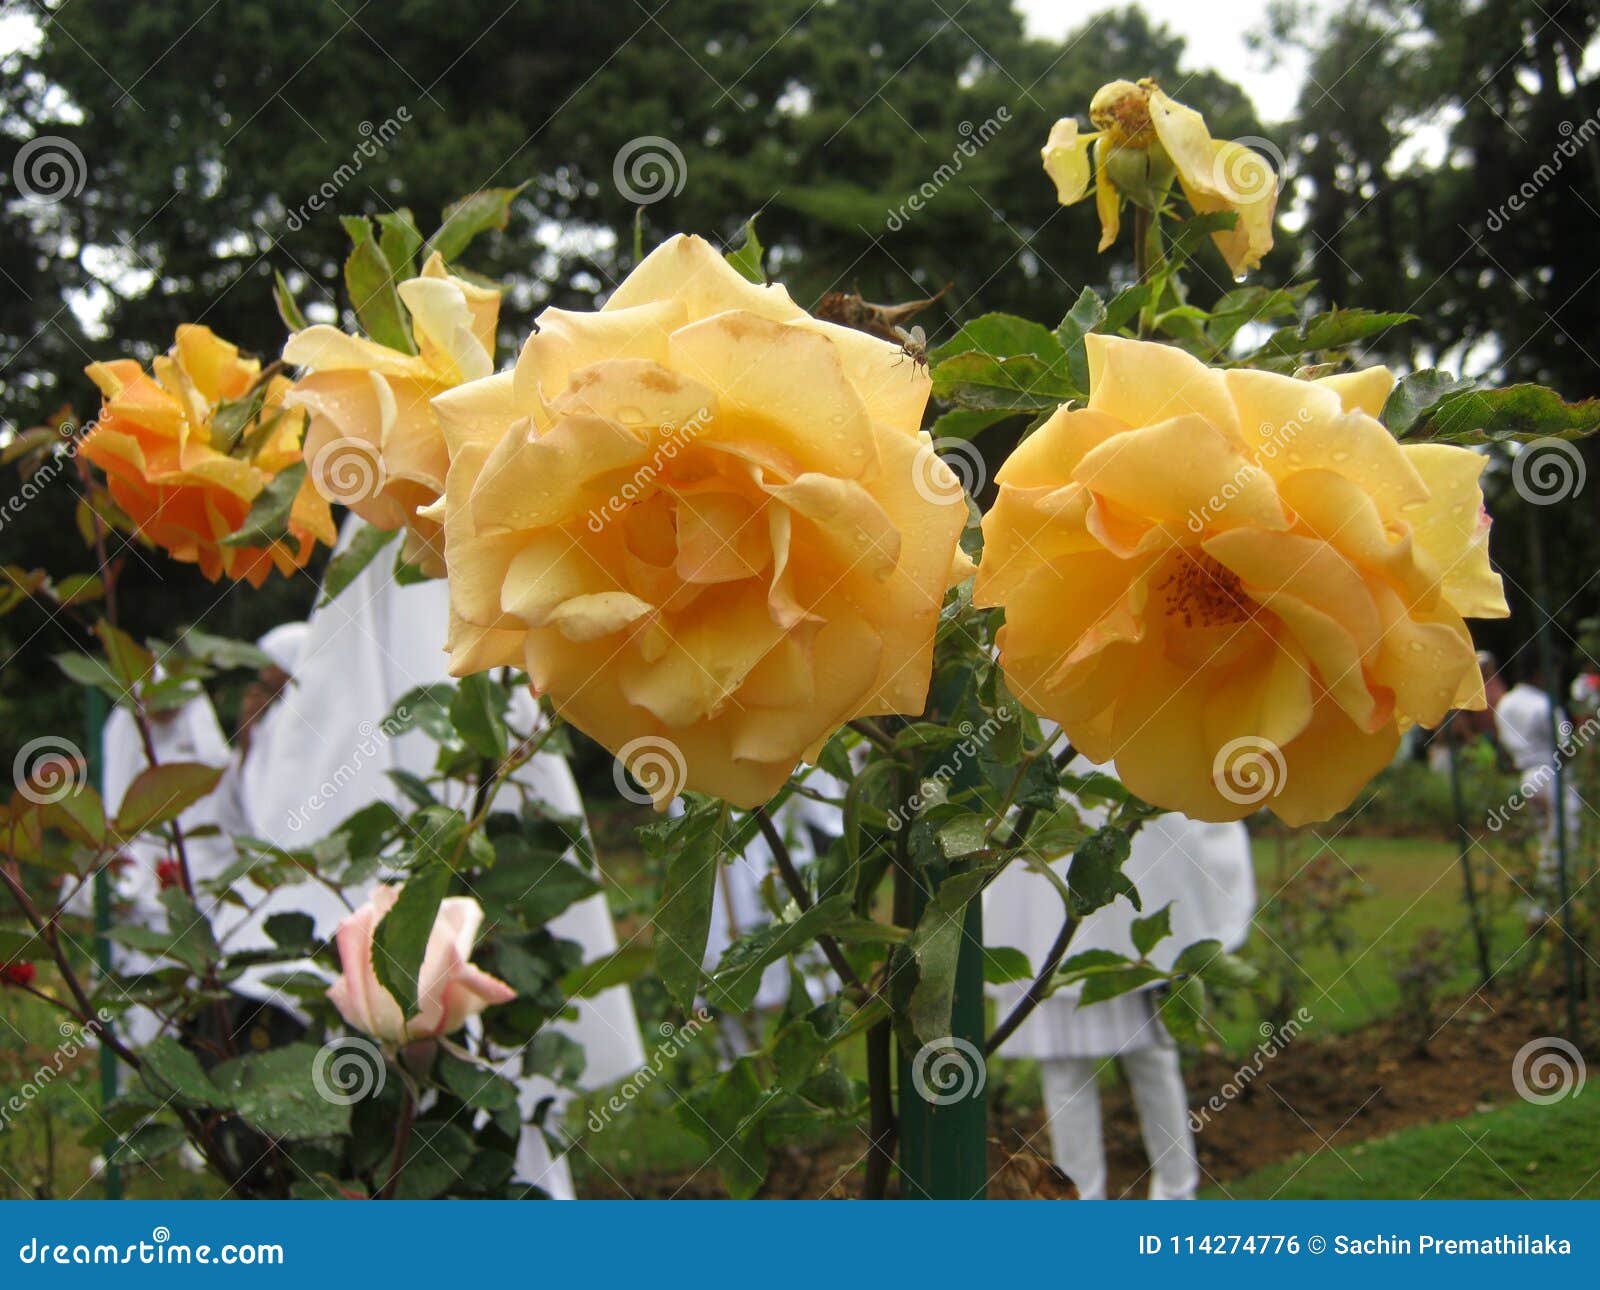 Lanka sri roses in Roses Sri